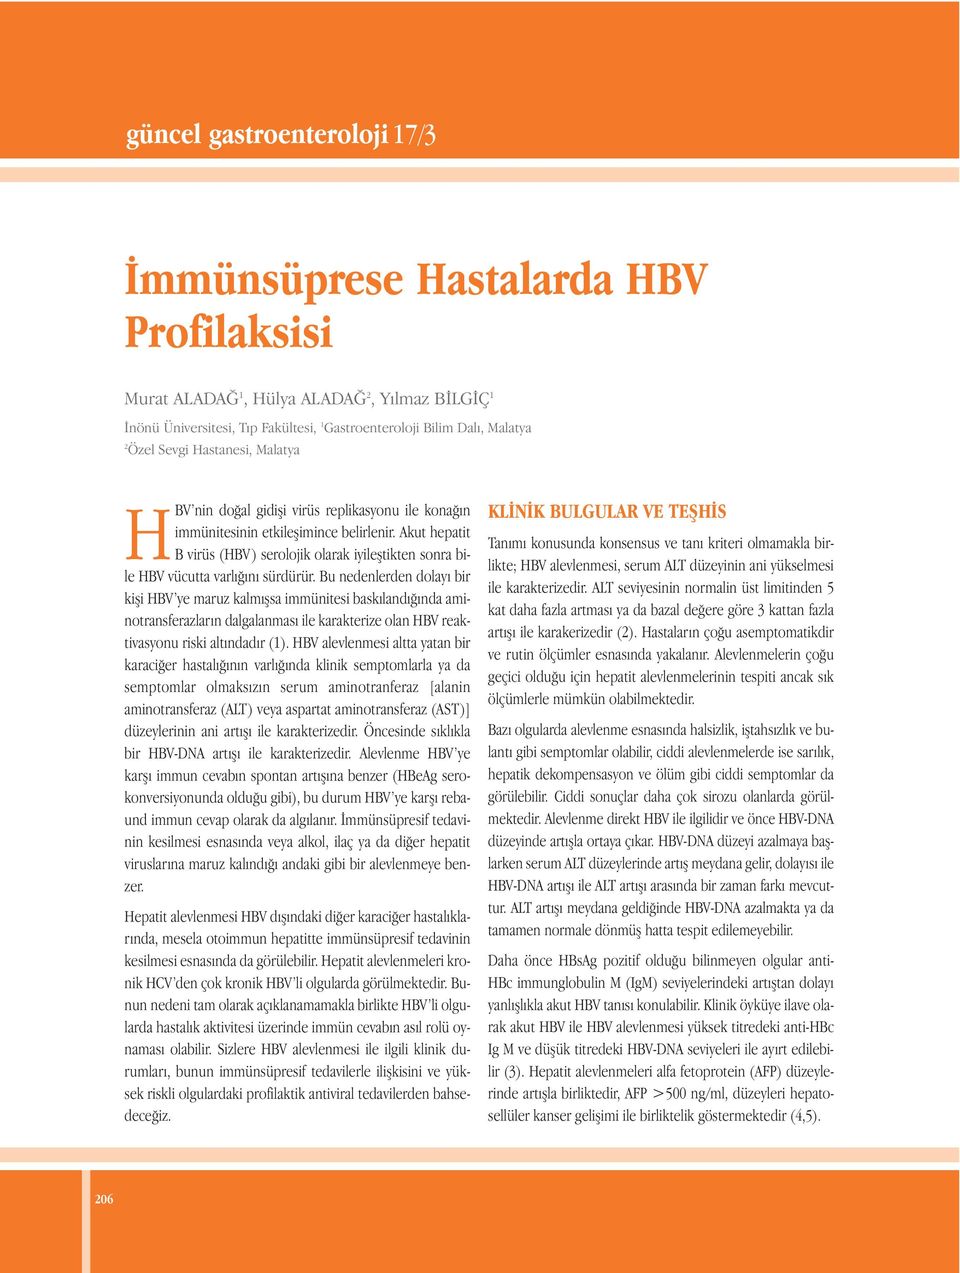 Akut hepatit B virüs (HBV ) serolojik olarak iyileştikten sonra bile HBV vücutta varlığını sürdürür.